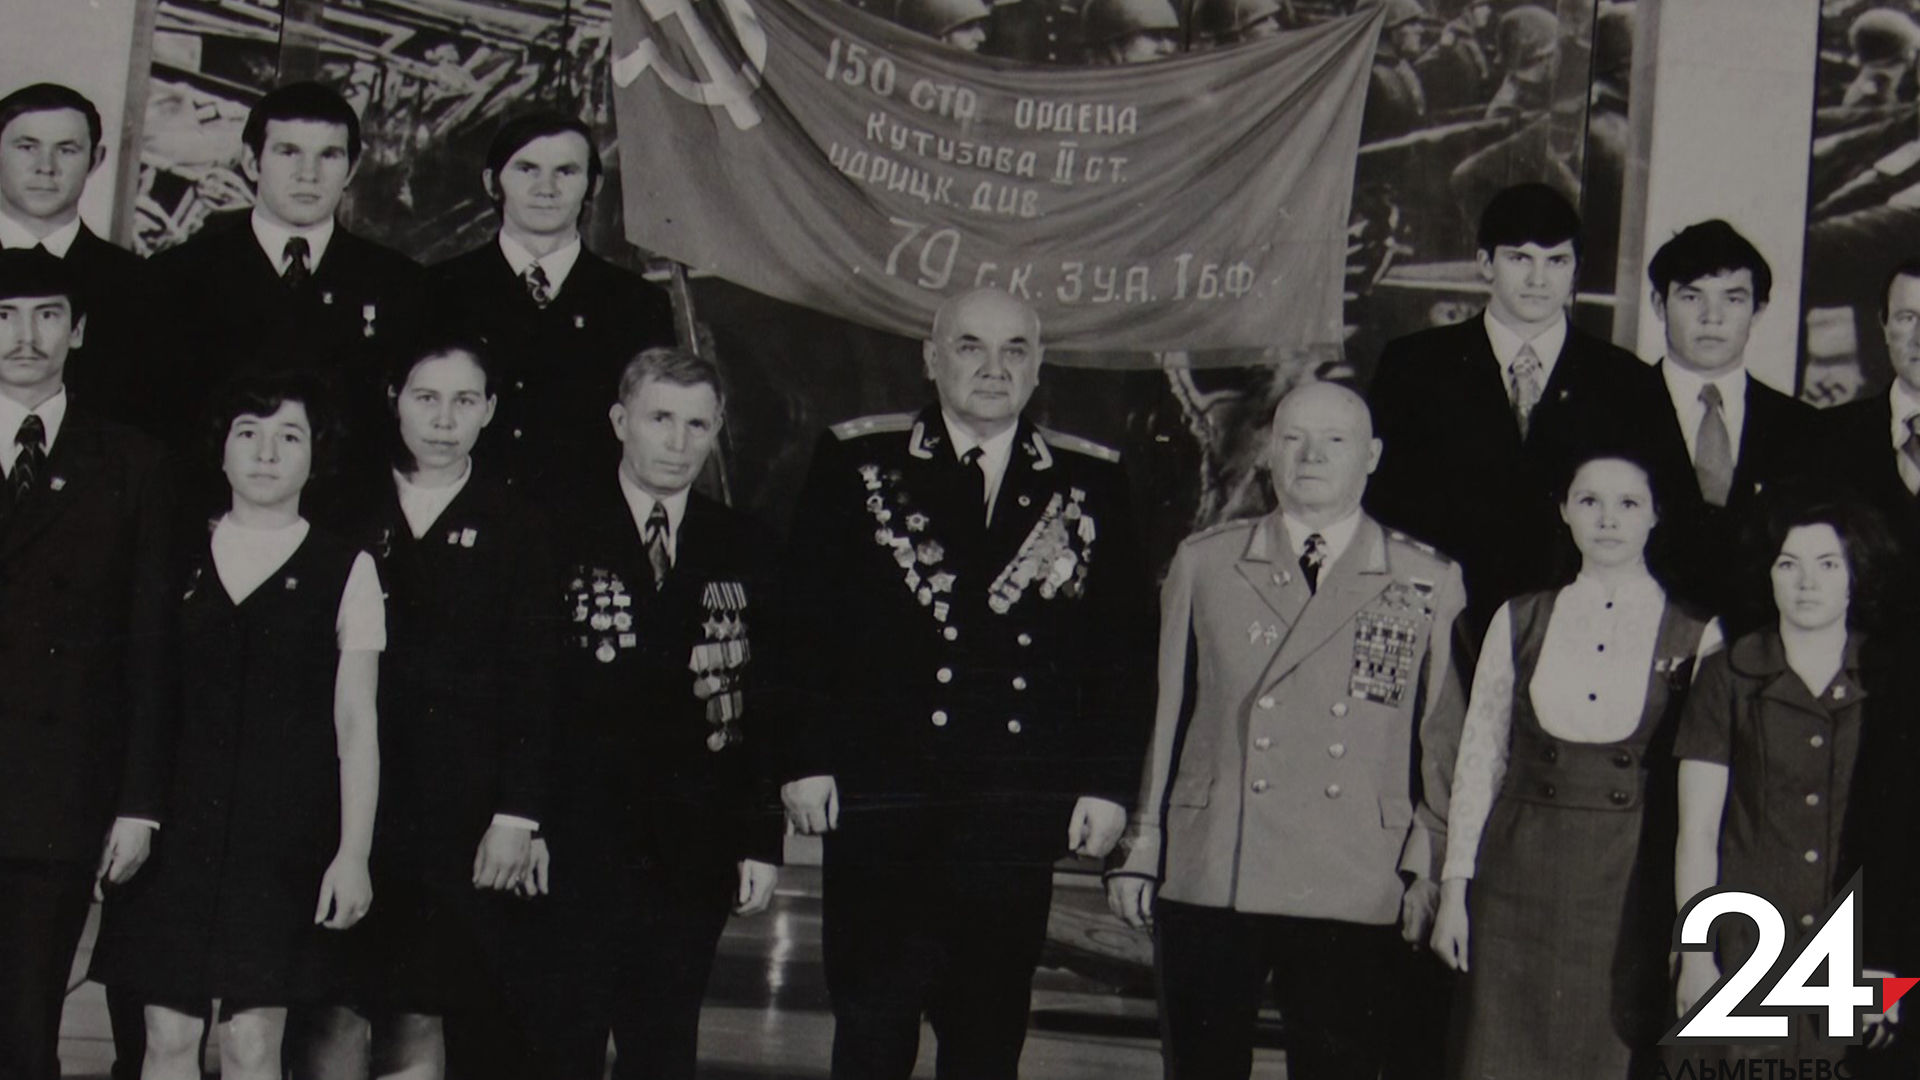 Редкое фото со знаменем Победы хранится в личном архиве жителя Альметьевска